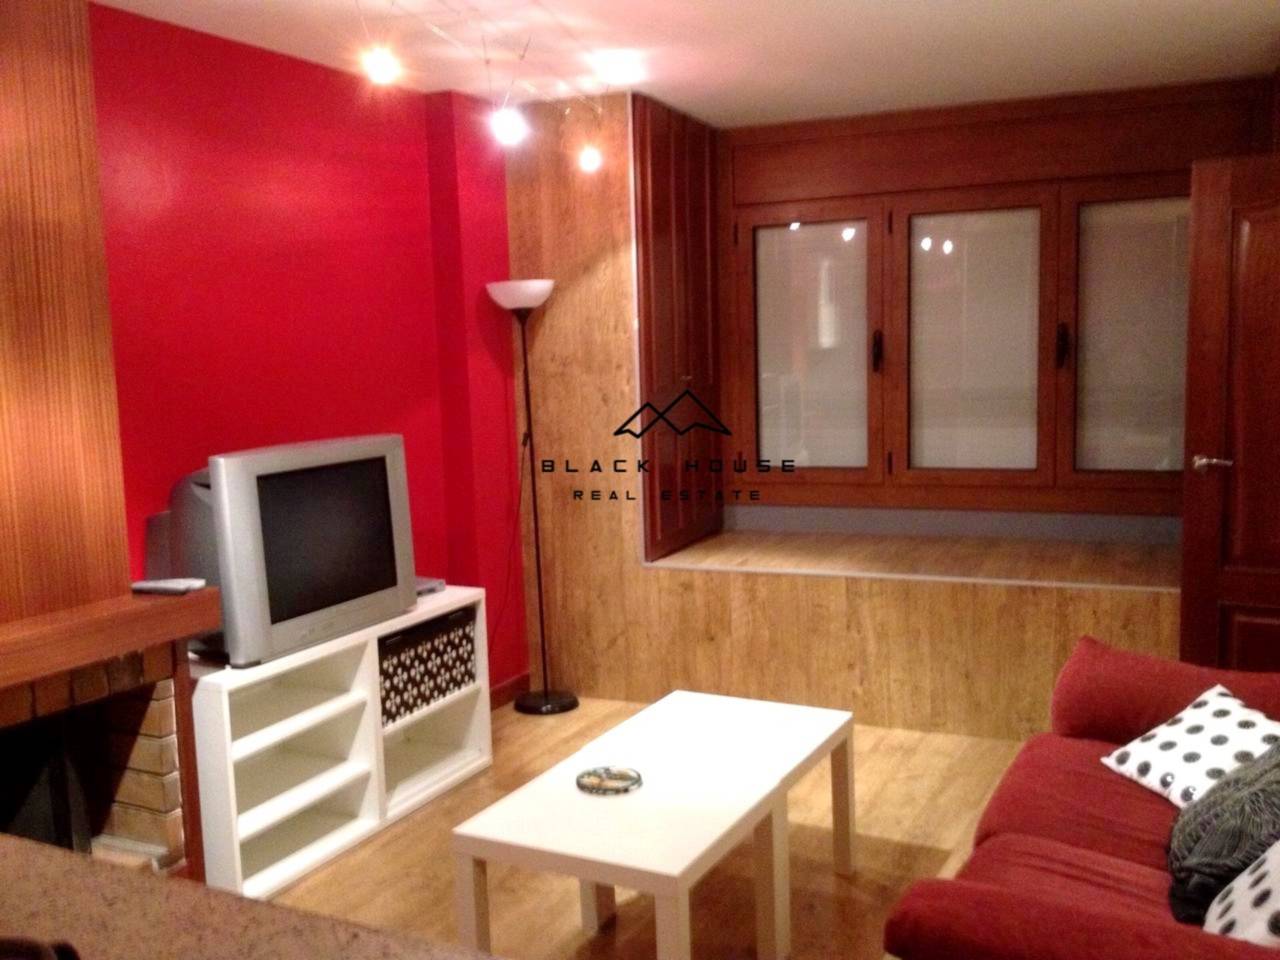 Apartment for sale in Santa Coloma, Andorra la vella